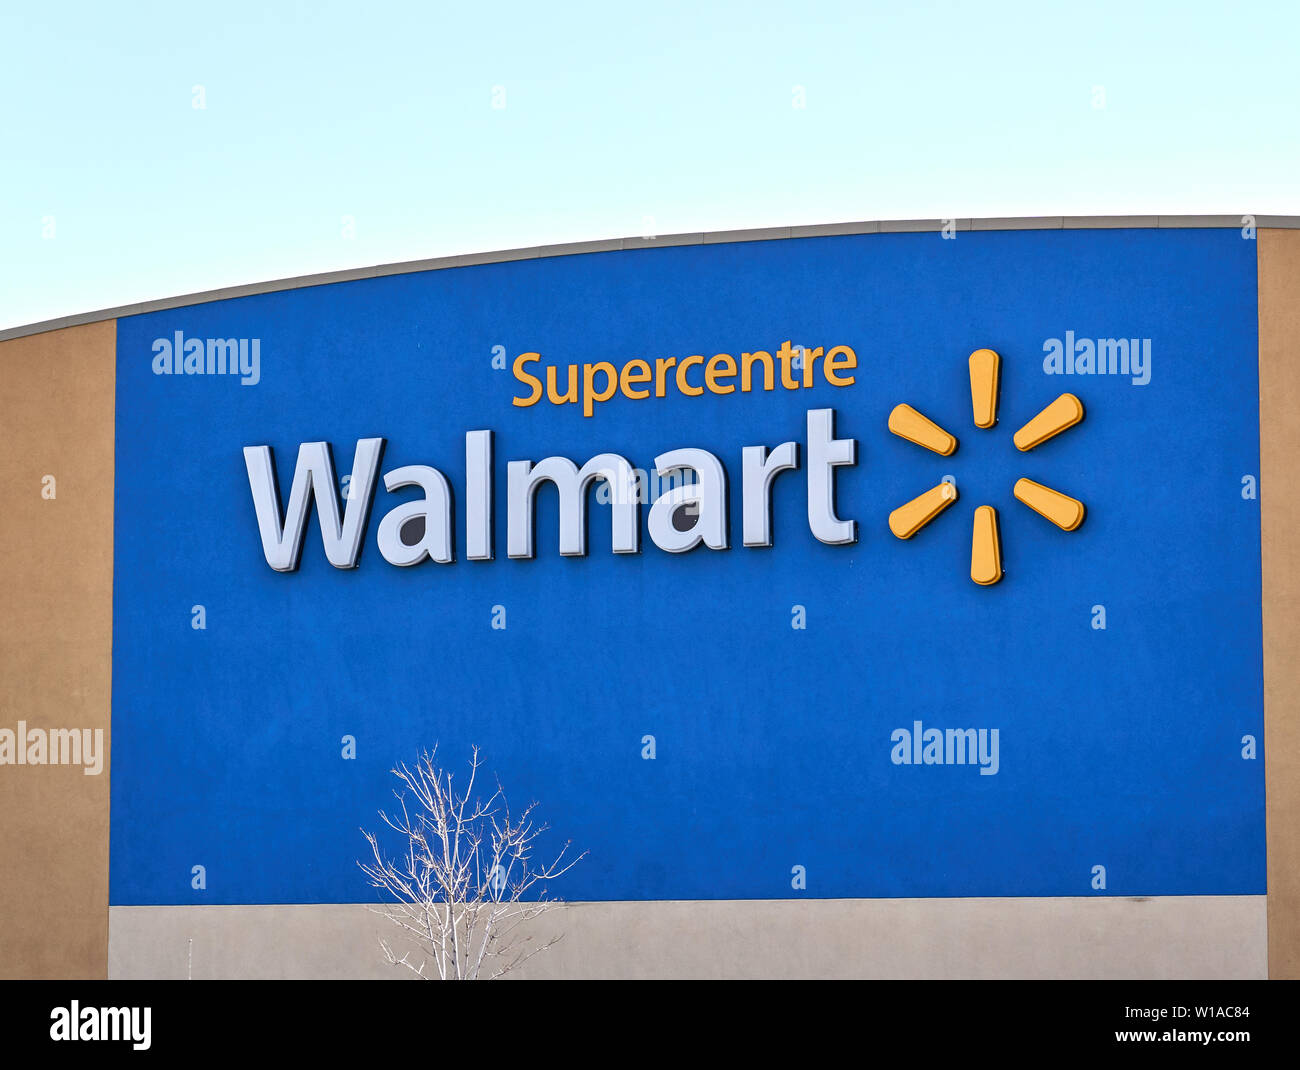 MONTREAL, KANADA - 30. APRIL 2019: Walmart Stores vorne und Logo. Walmart ist eine US-amerikanische multinationale retail Corporation, die eine Kette von Hyp arbeitet Stockfoto